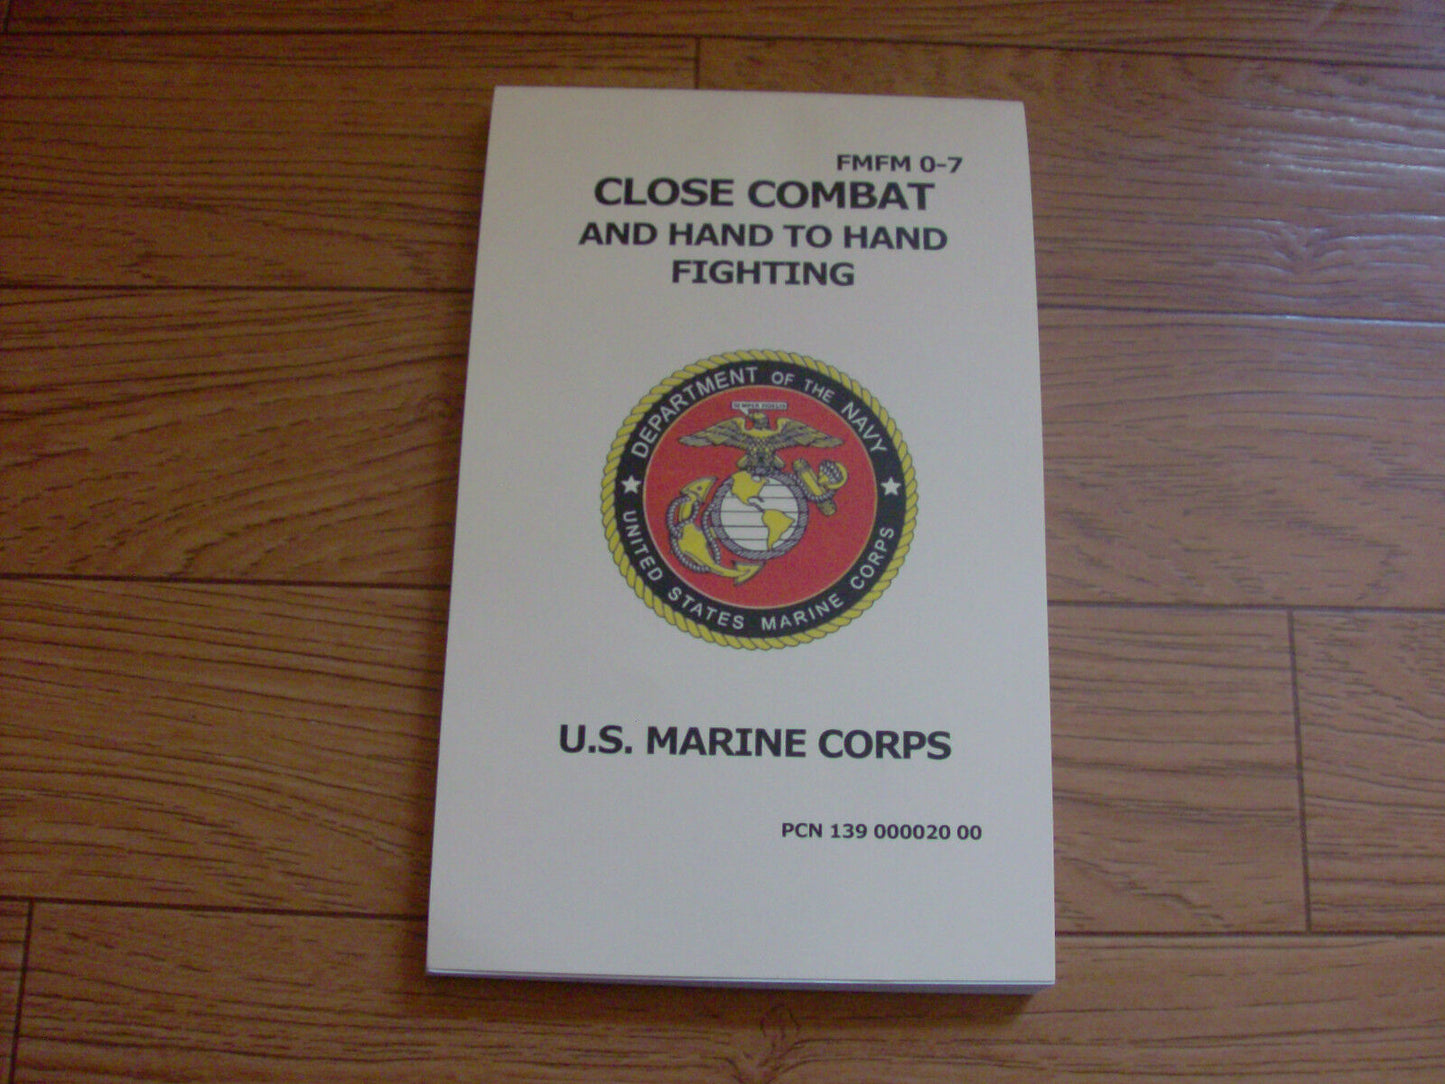 U.S MARINE CORPS MILITARY HAND TO HAND FIGHTING CLOSE COMBAT HANDBOOK FMFM - 07